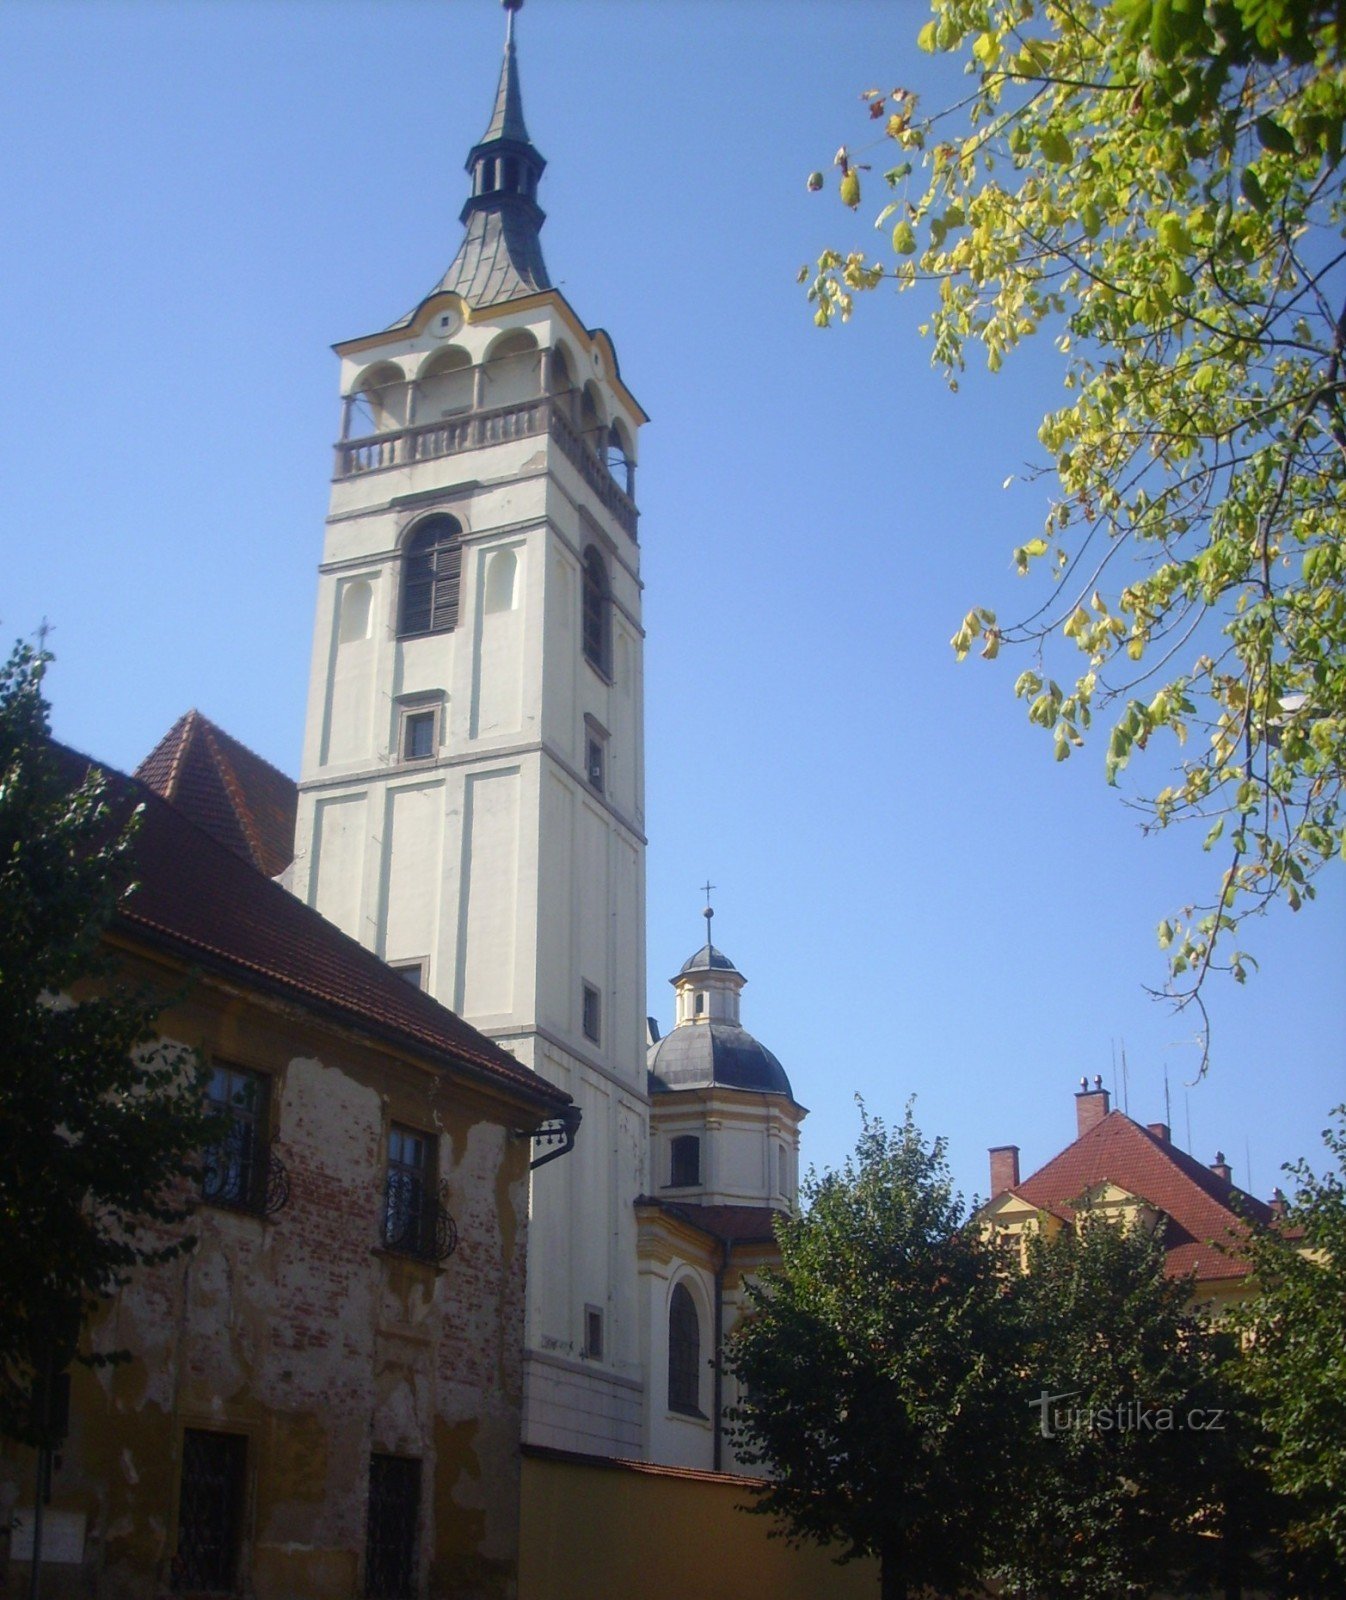 Lipník - the tower of the church of St. Fr. Serafínský next to the park